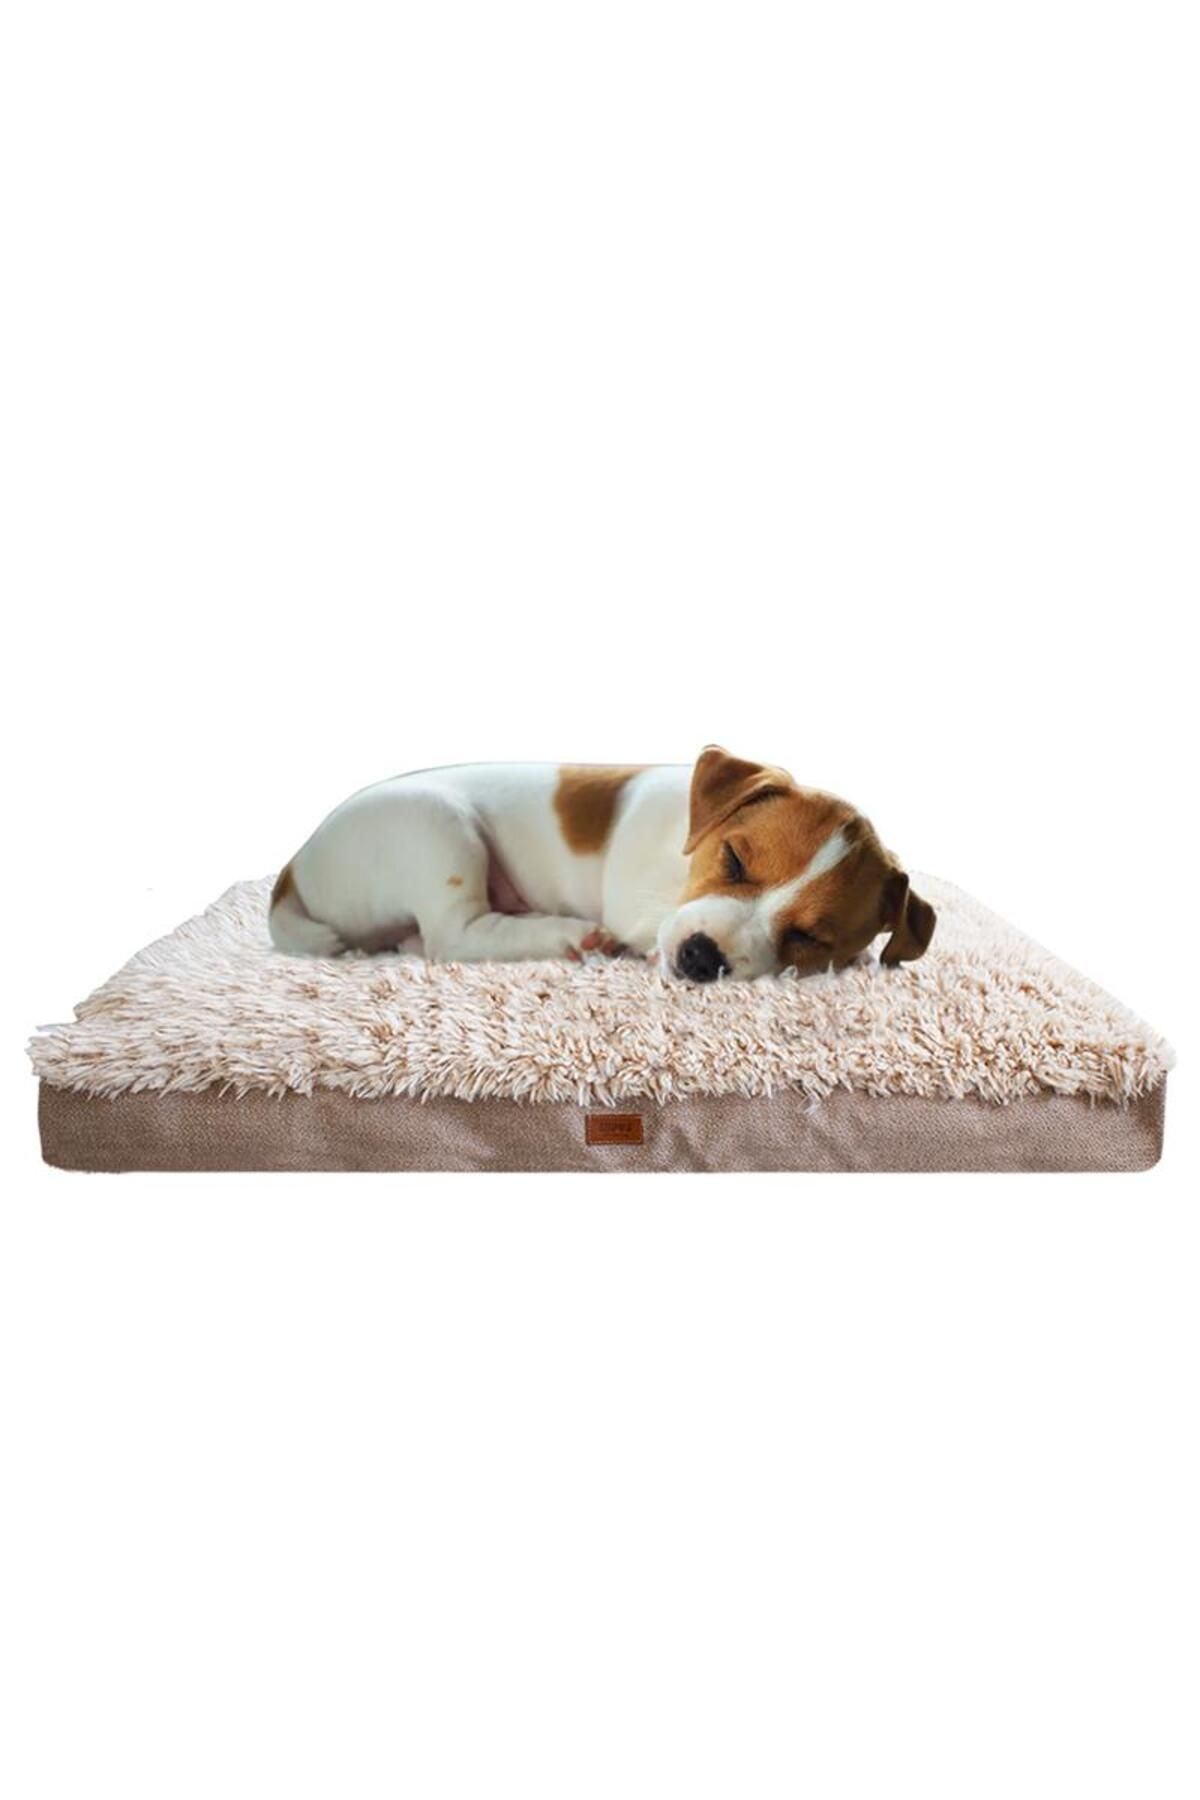 Lepus Pophidic Cushion Köpek Yatağı[S]